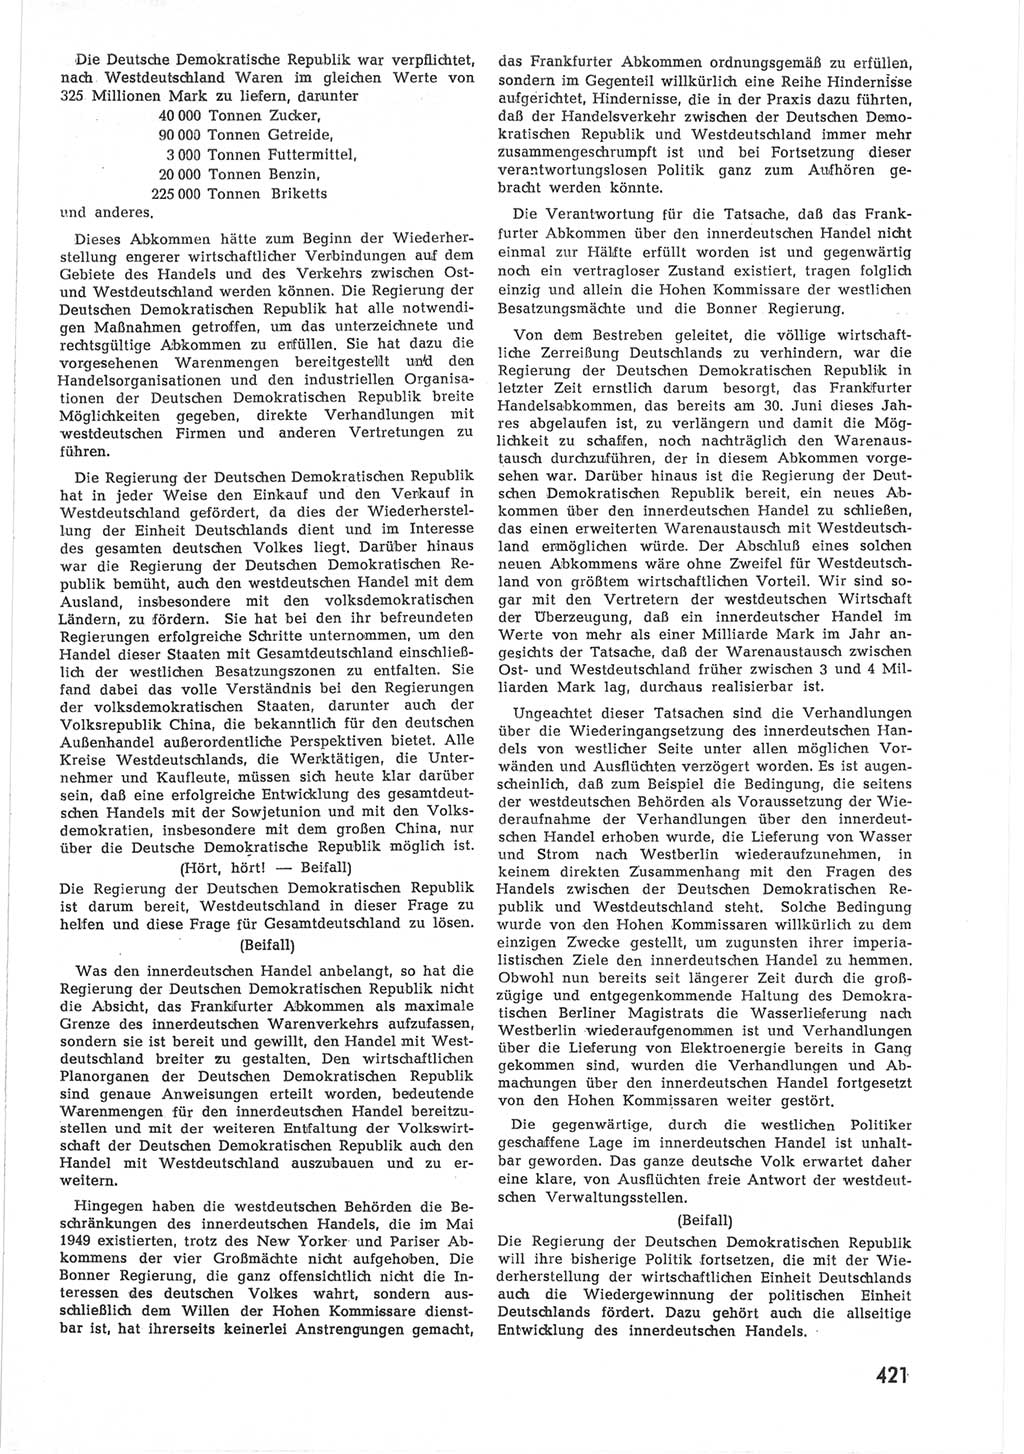 Provisorische Volkskammer (VK) der Deutschen Demokratischen Republik (DDR) 1949-1950, Dokument 439 (Prov. VK DDR 1949-1950, Dok. 439)